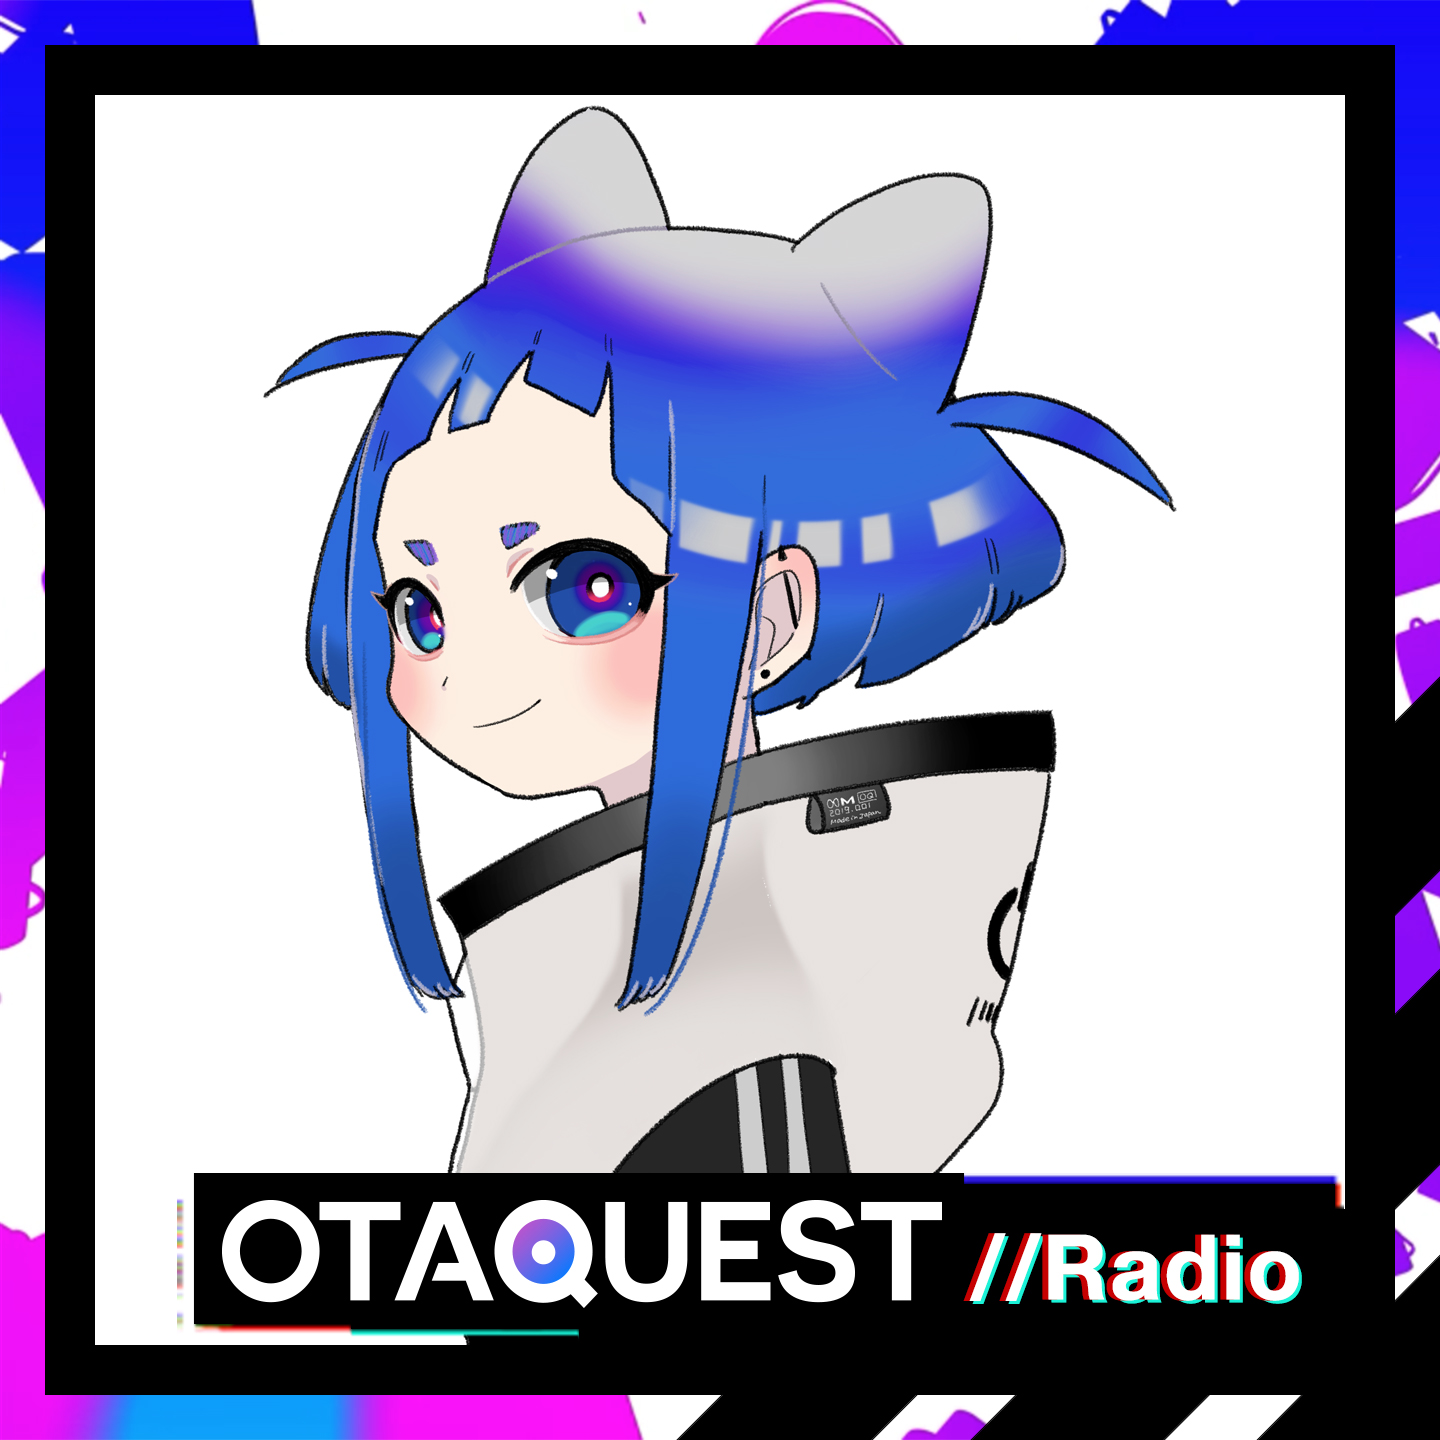 OTAQUEST Radio